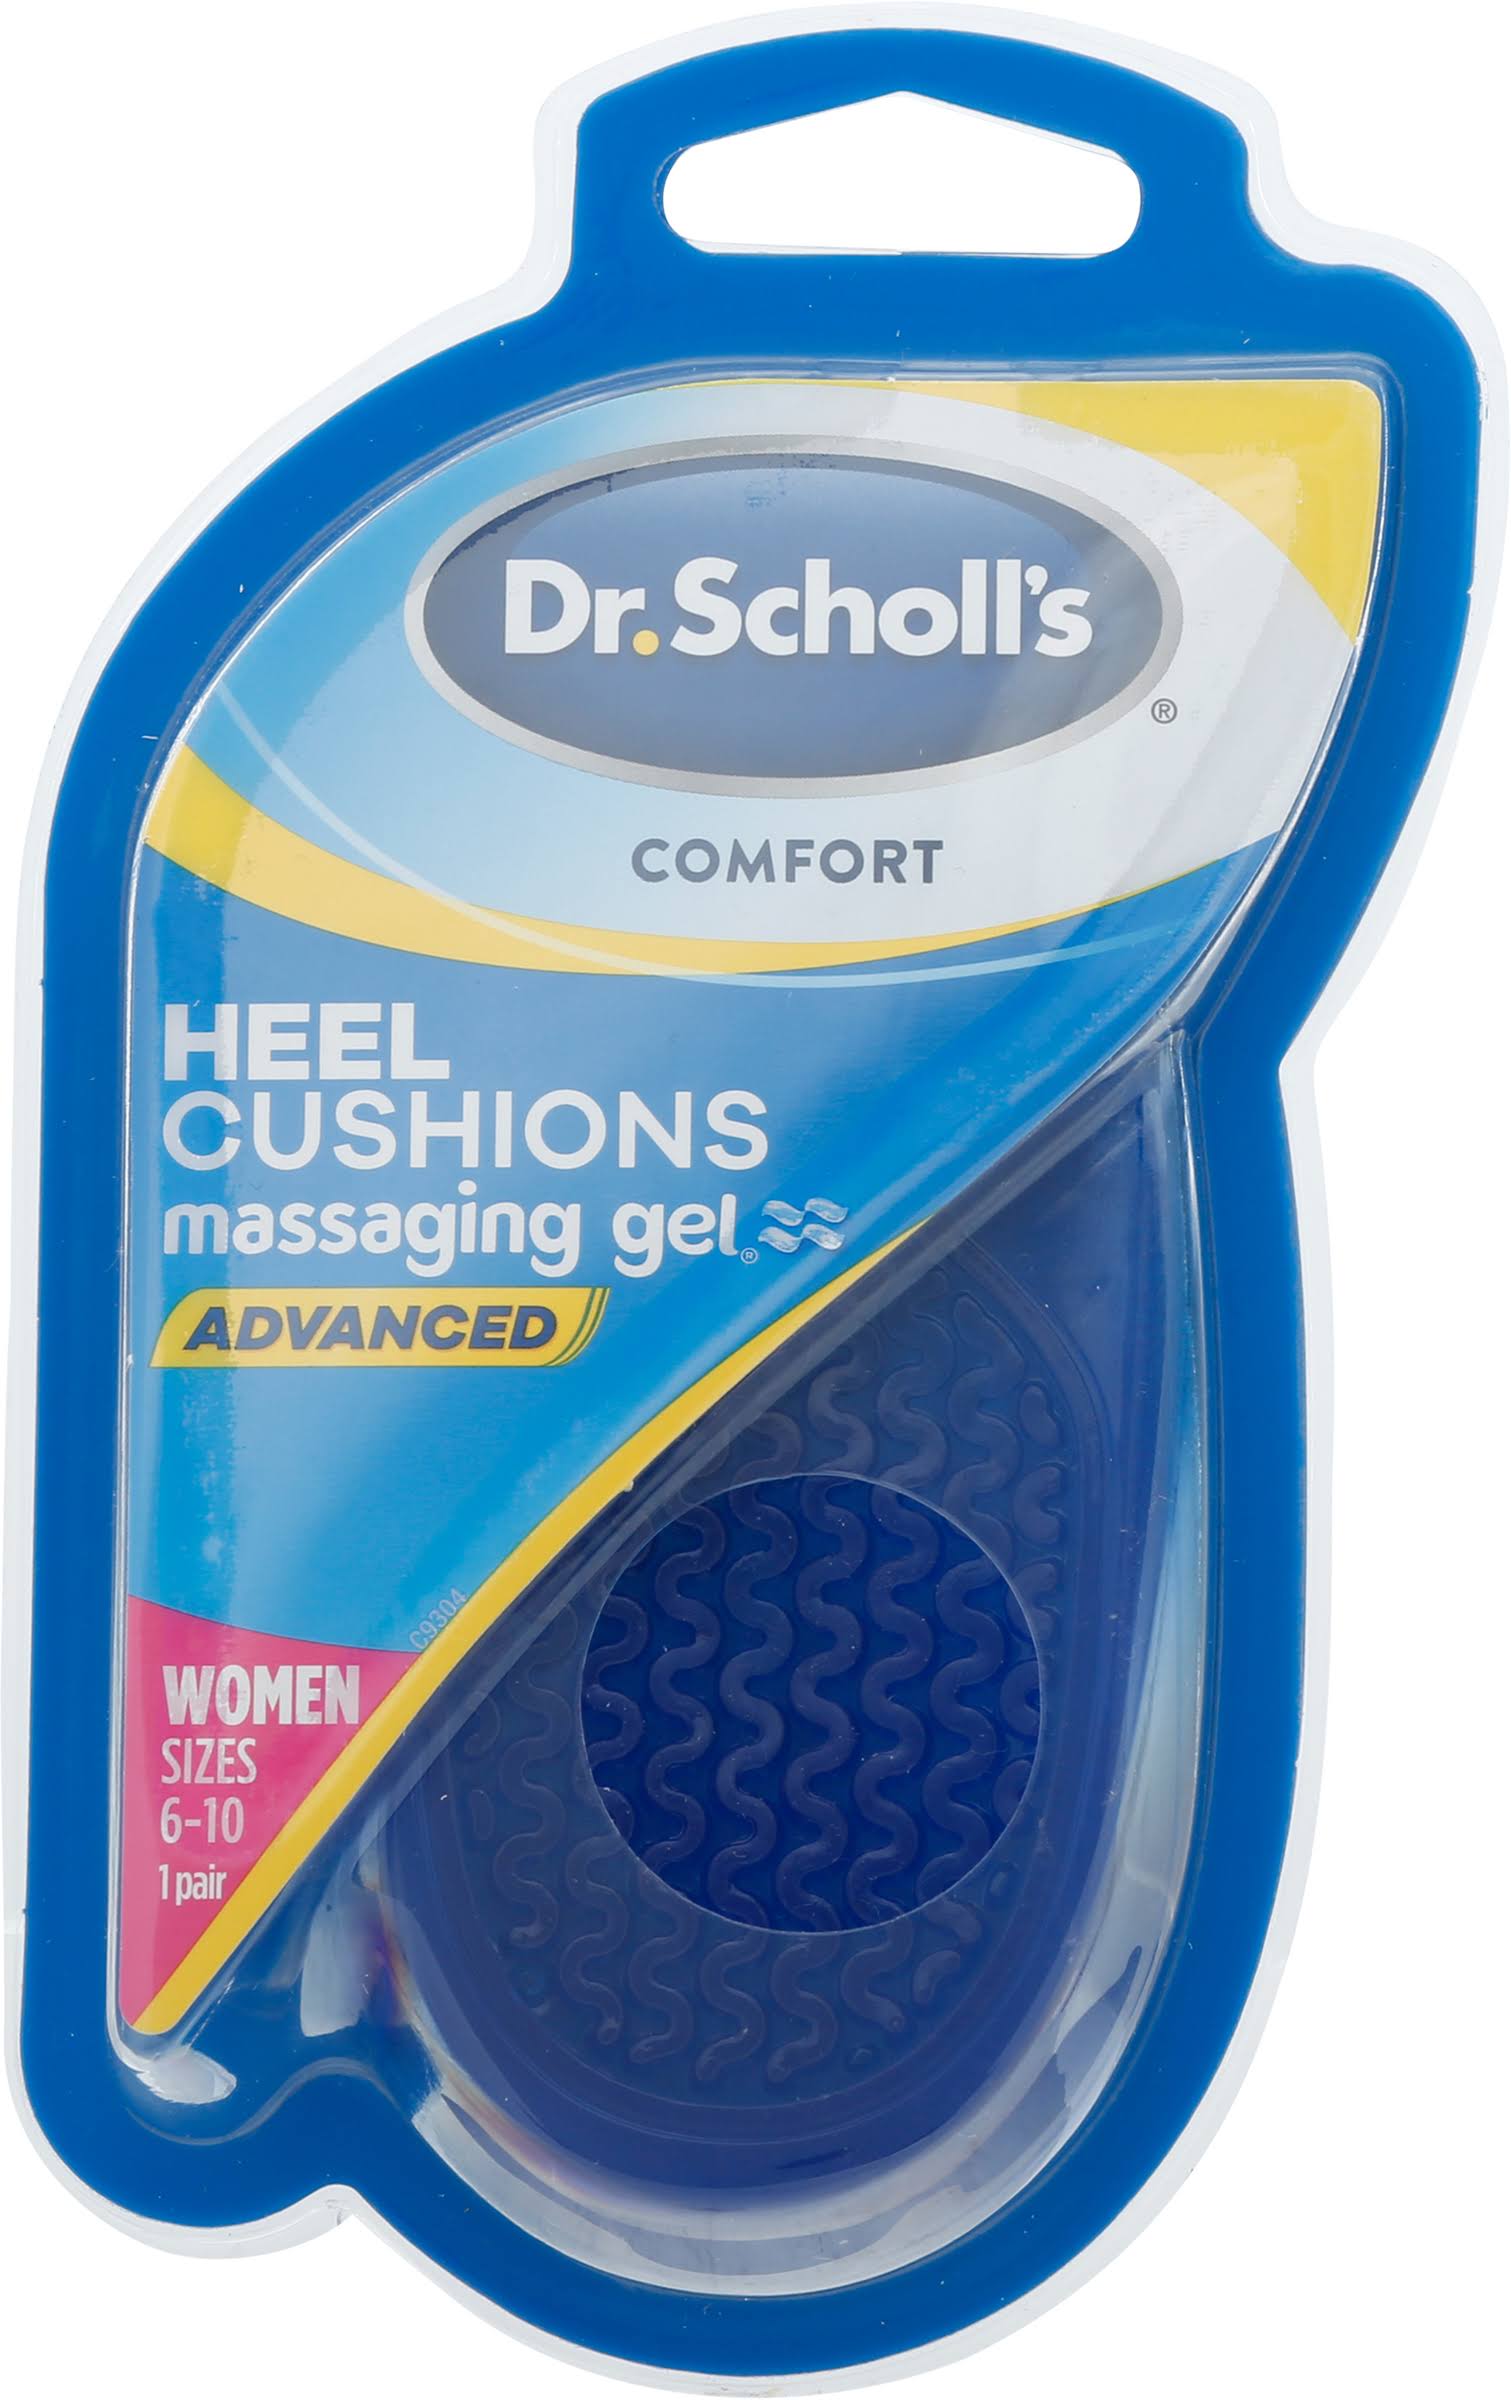 Dr. Scholls Comfort Heel Cushions for Women, 1 Pair, Size 6-10